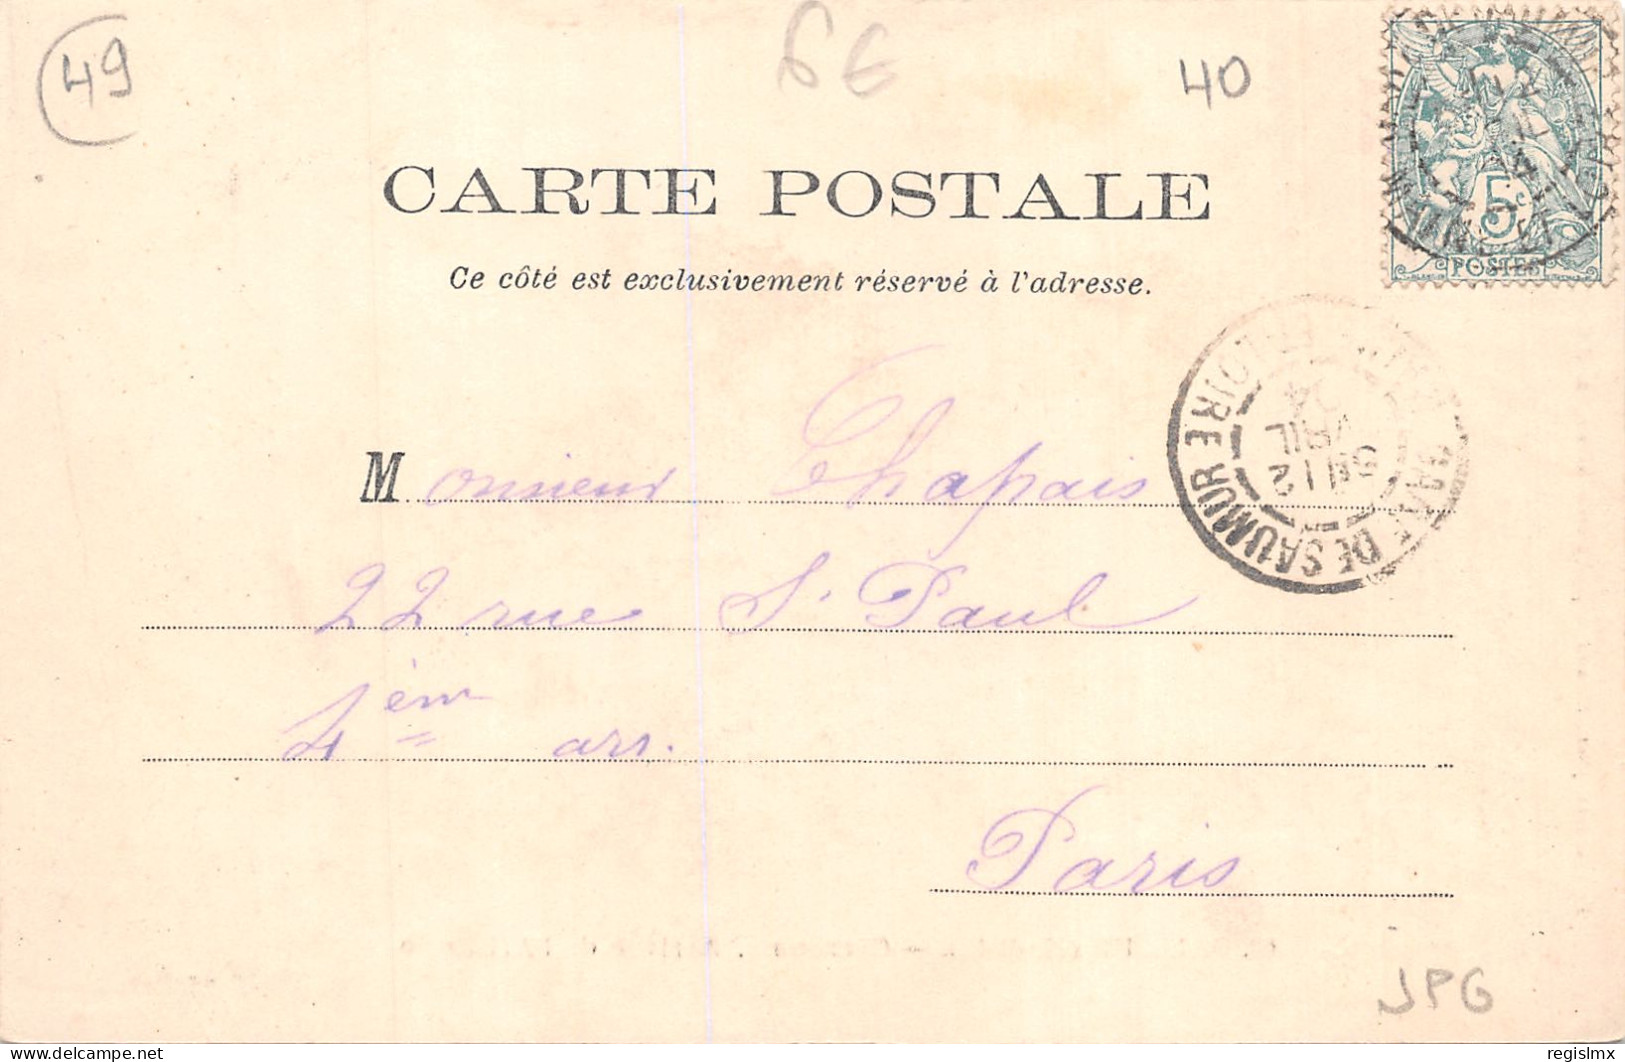 49-SAUMUR-CARROUSEL ARRIVEE DE L ARTILLERIE-N°2043-F/0249 - Saumur